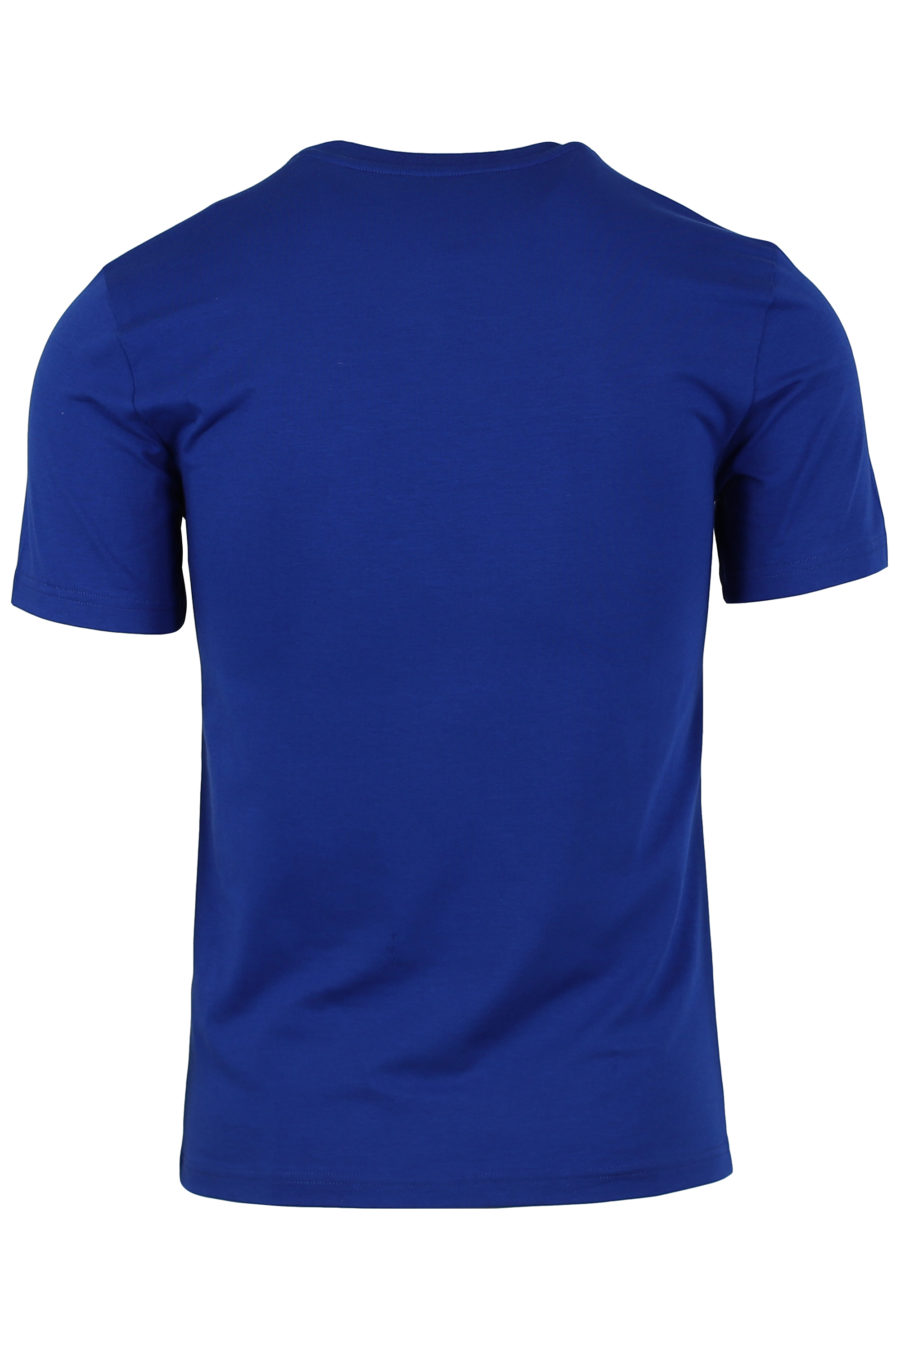 T-shirt bleu avec grand logo sur le devant - IMG 0918